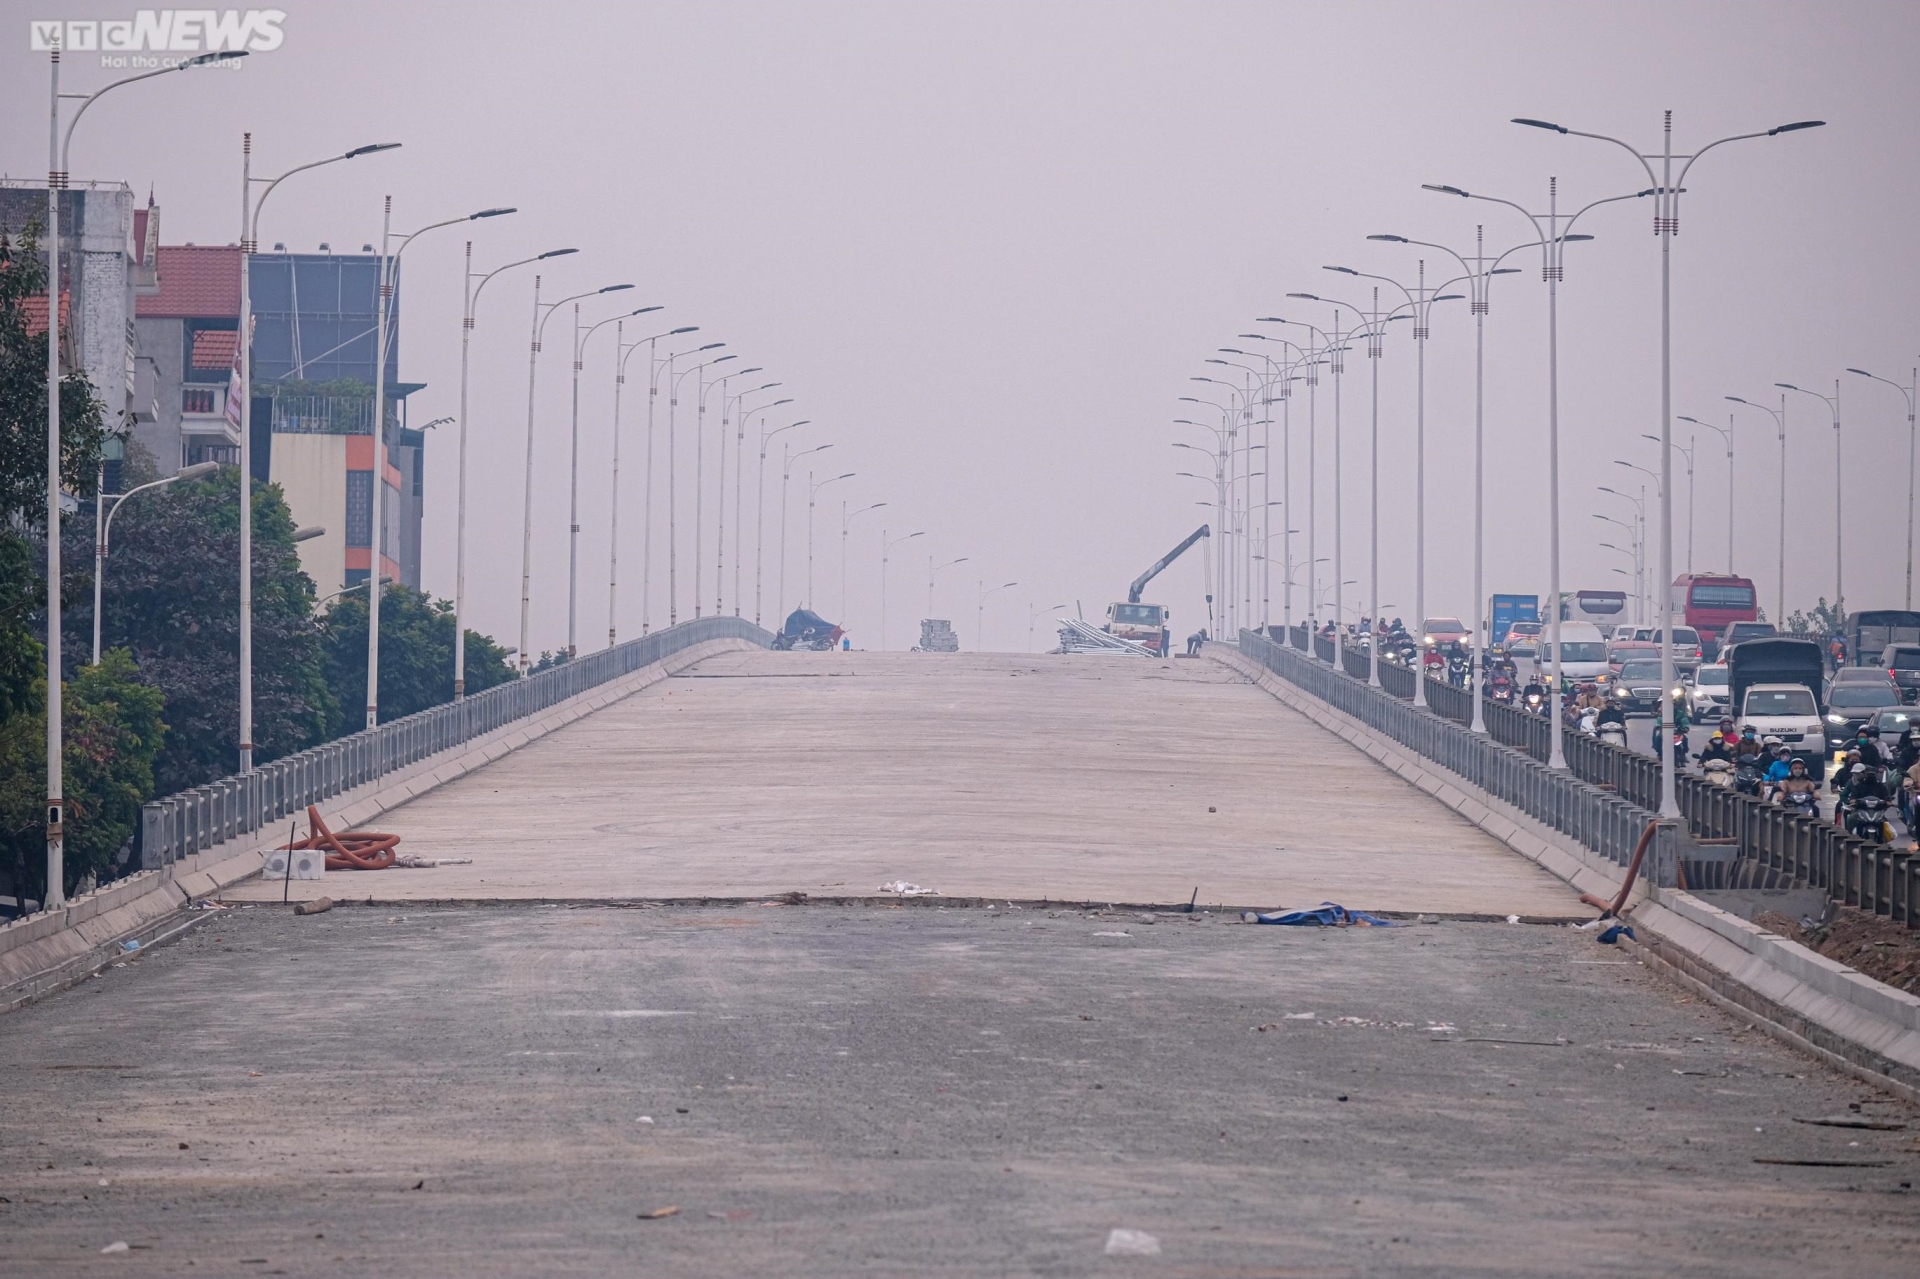 Toàn cảnh dự án cầu Vĩnh Tuy sắp hoàn thành nhìn từ trên cao - Ảnh 11.